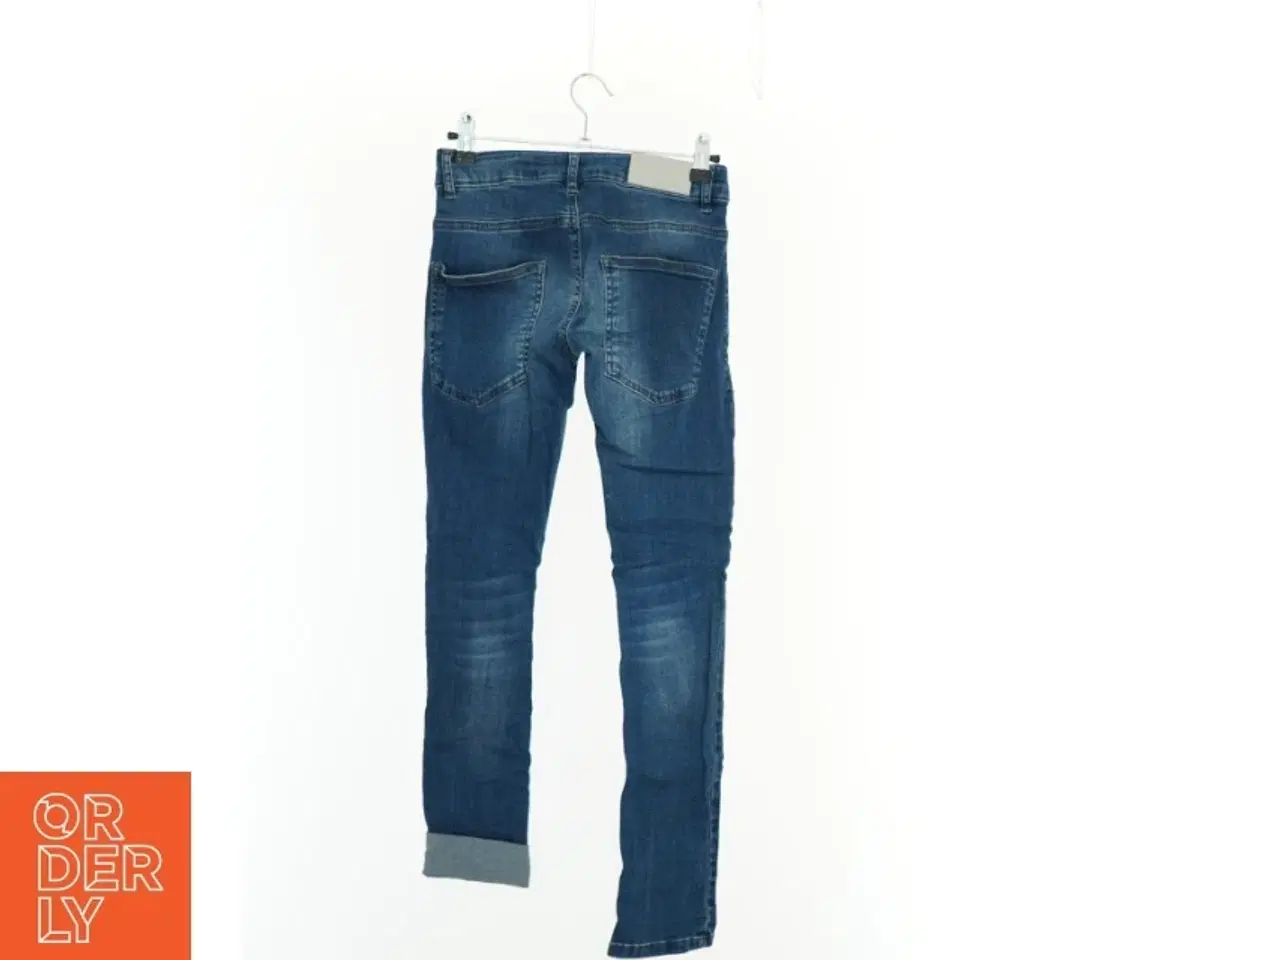 Billede 2 - Jeans fra Skinny Fit (str. 134 cm)